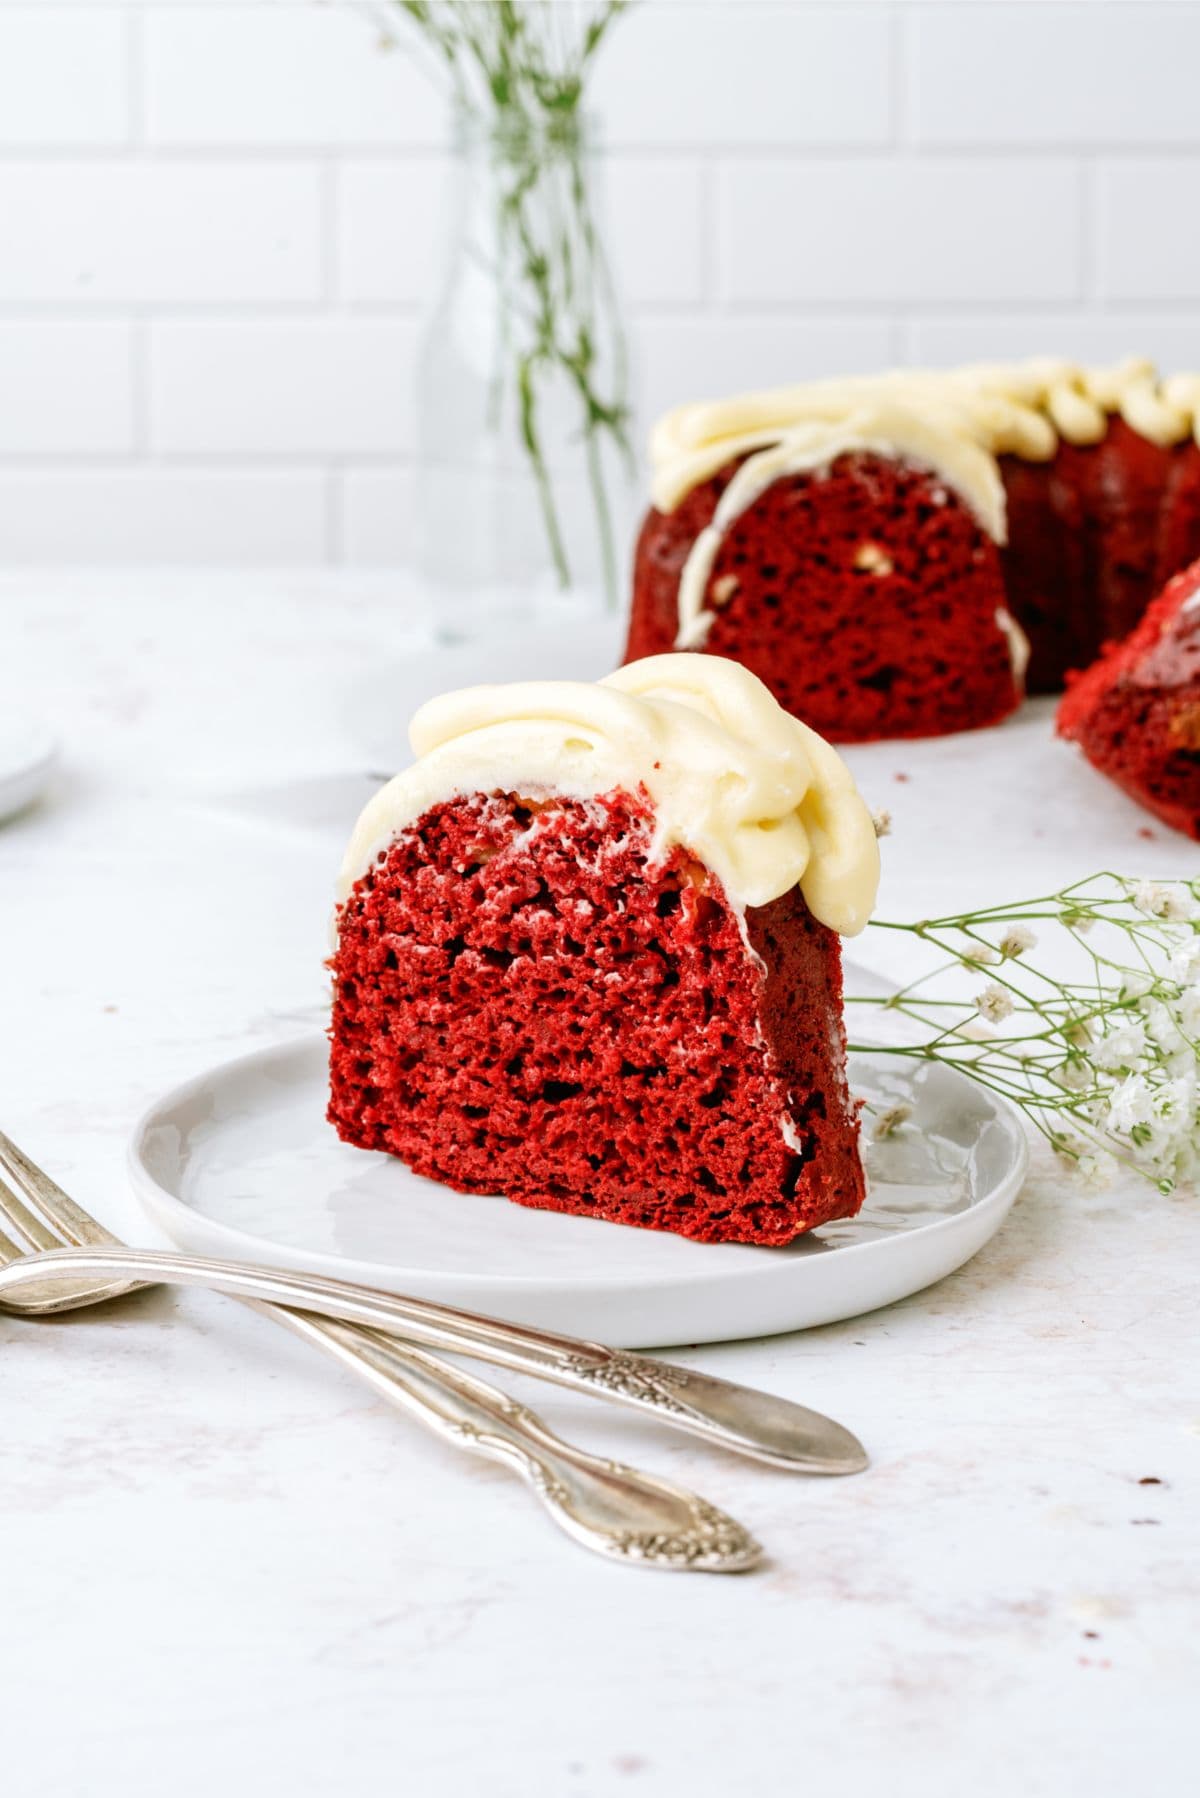 https://www.sixsistersstuff.com/wp-content/uploads/2014/03/Red-Velvet-Bundt-Cake-Recipe.jpg